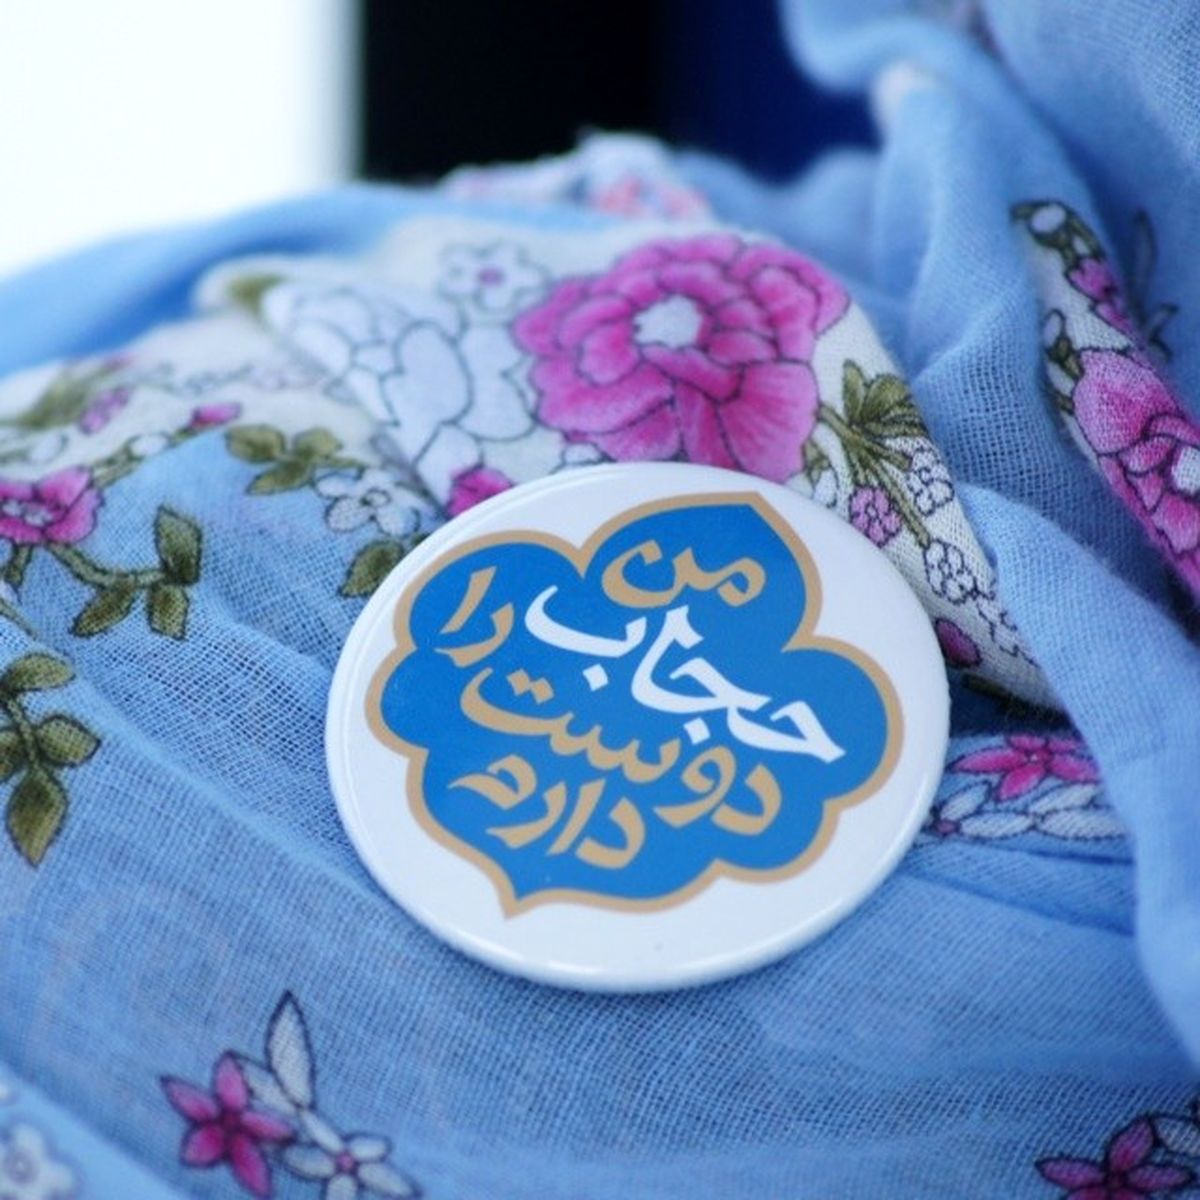 پویش "من حجاب را دوست دارم" در بخش عفاف و حجاب نمایشگاه قرآن